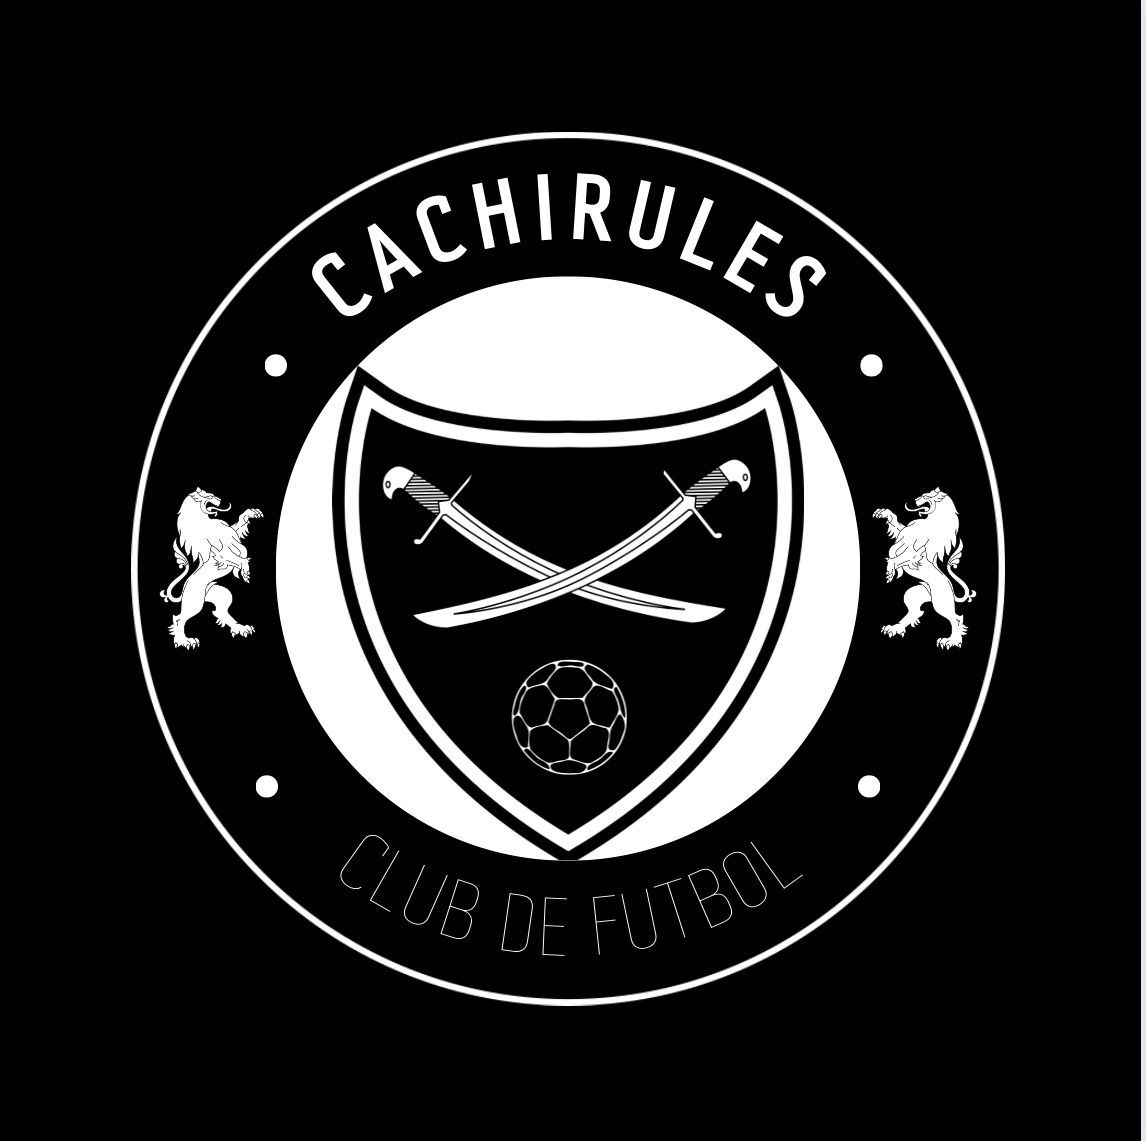 CACHIRULES FC